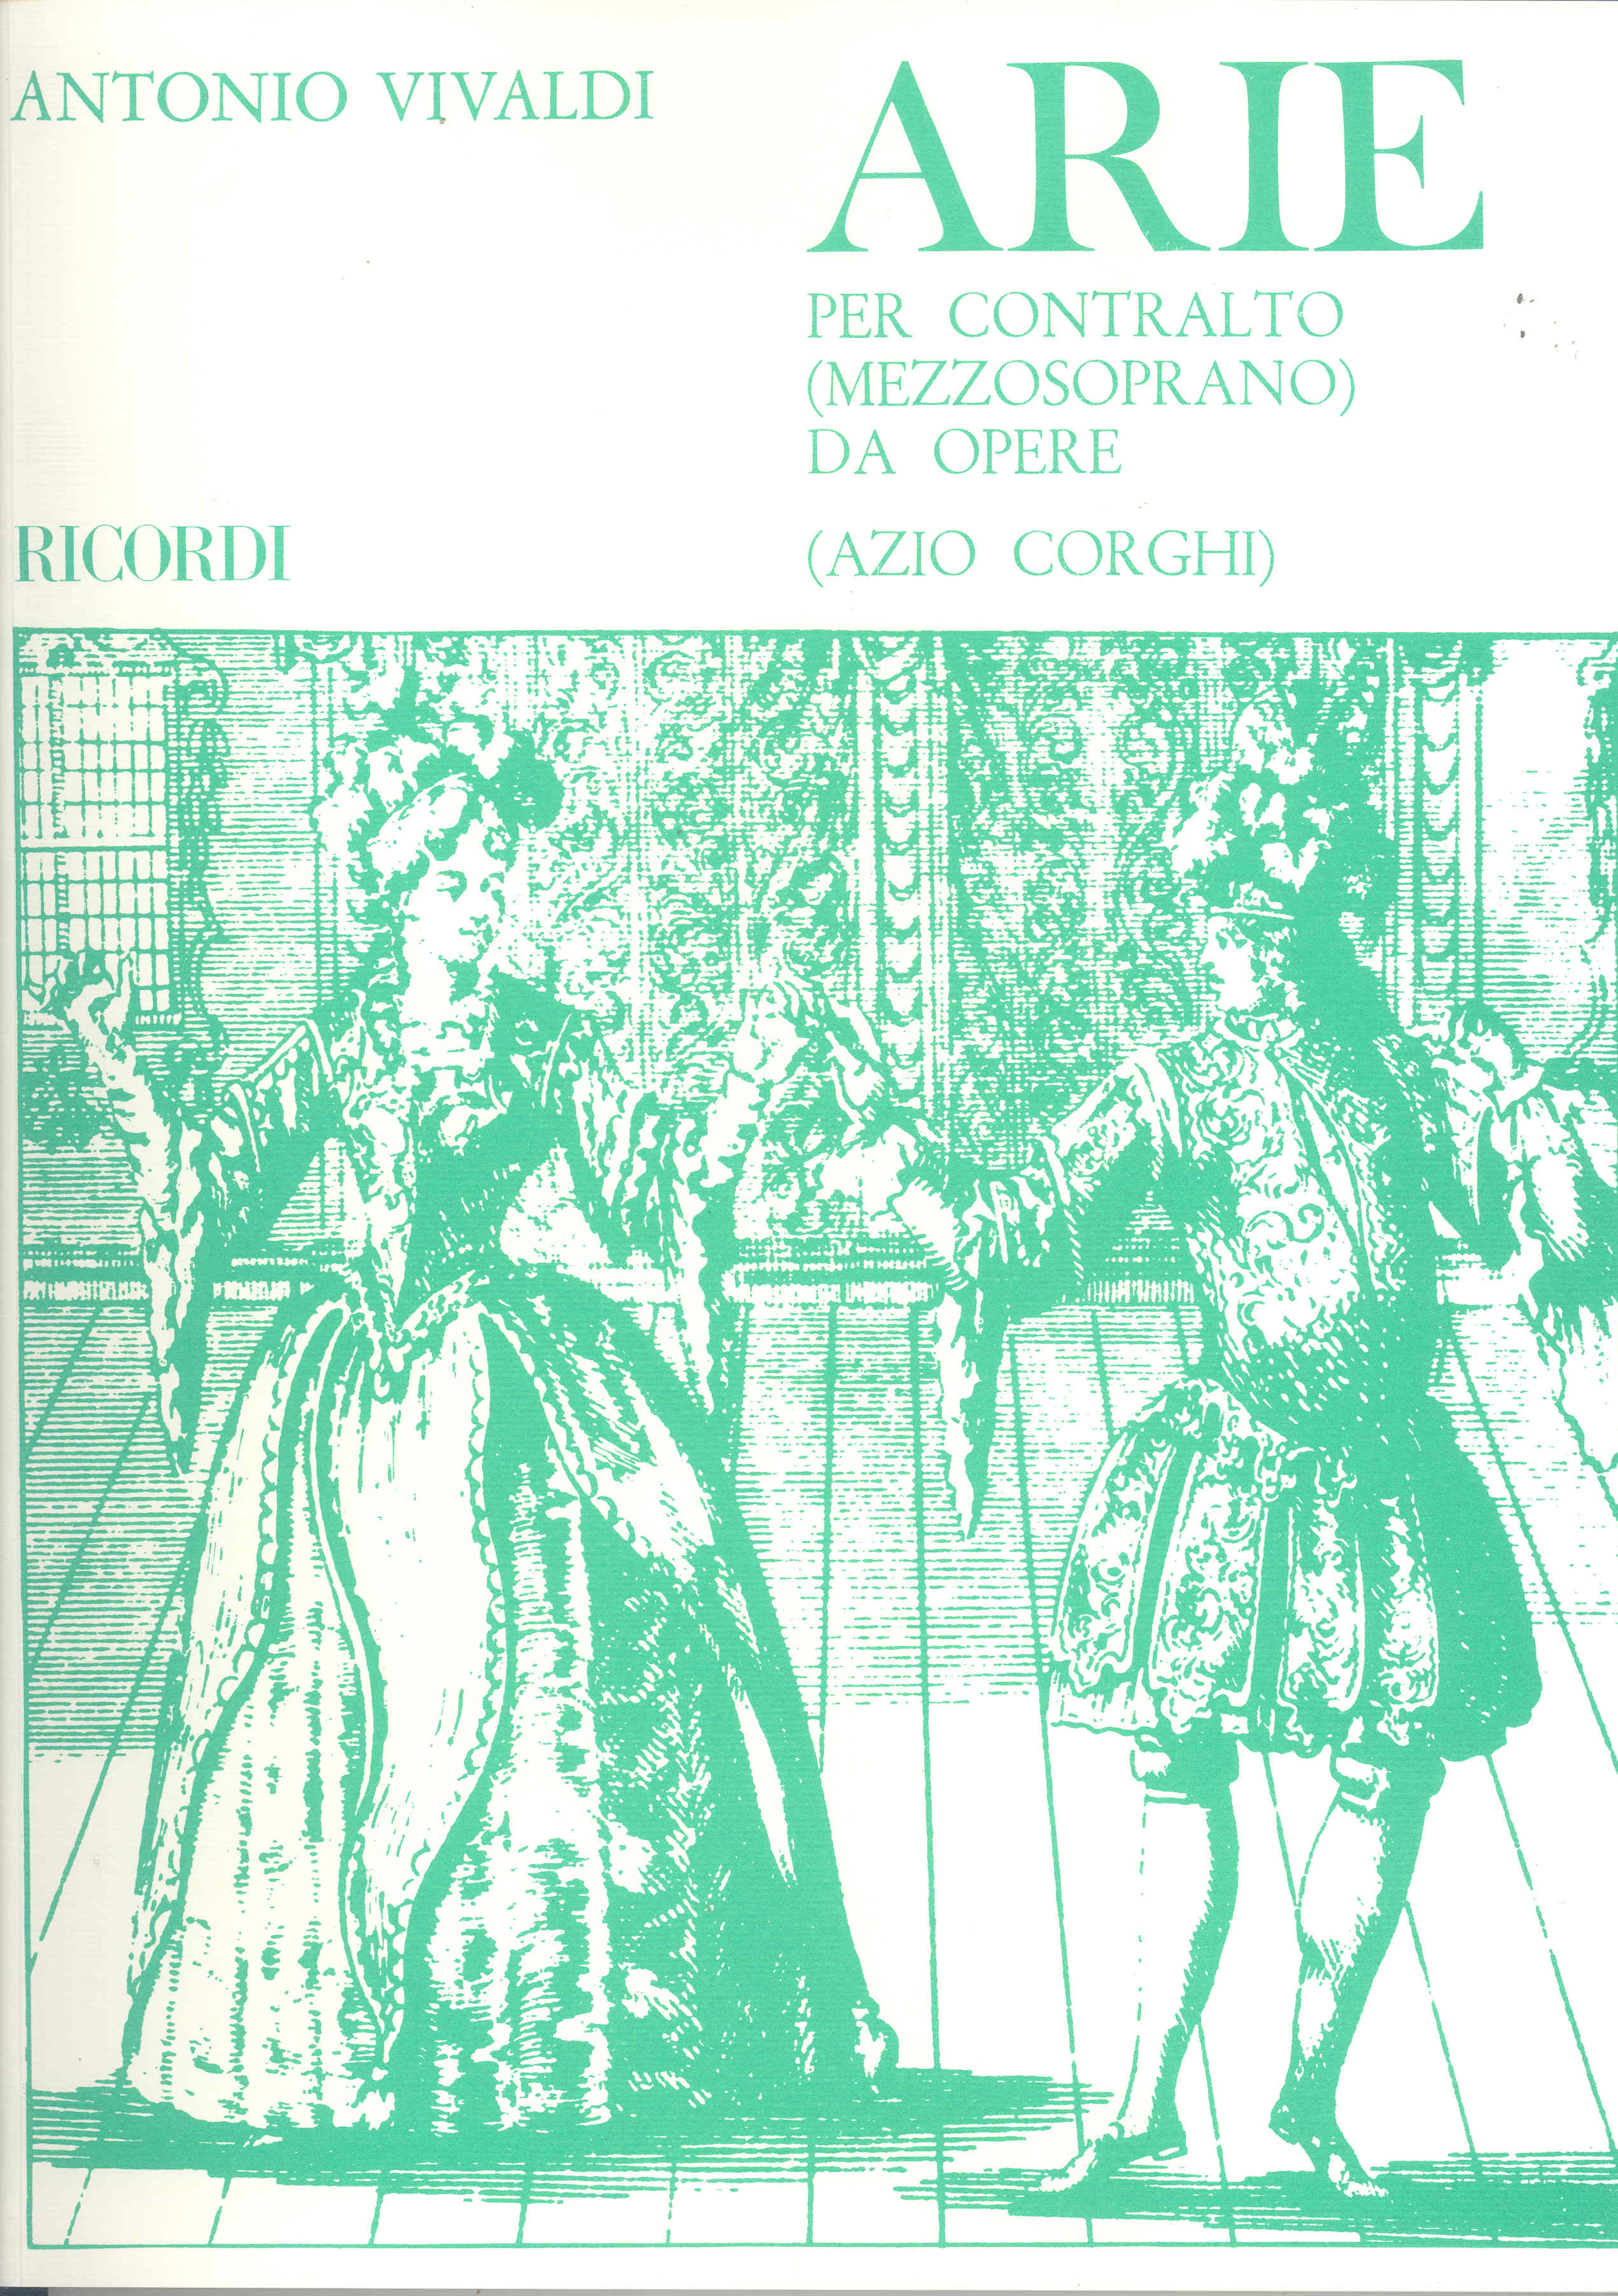 Vivaldi Fourteen Contralto Opera Arias Songs Sheet Music Songbook